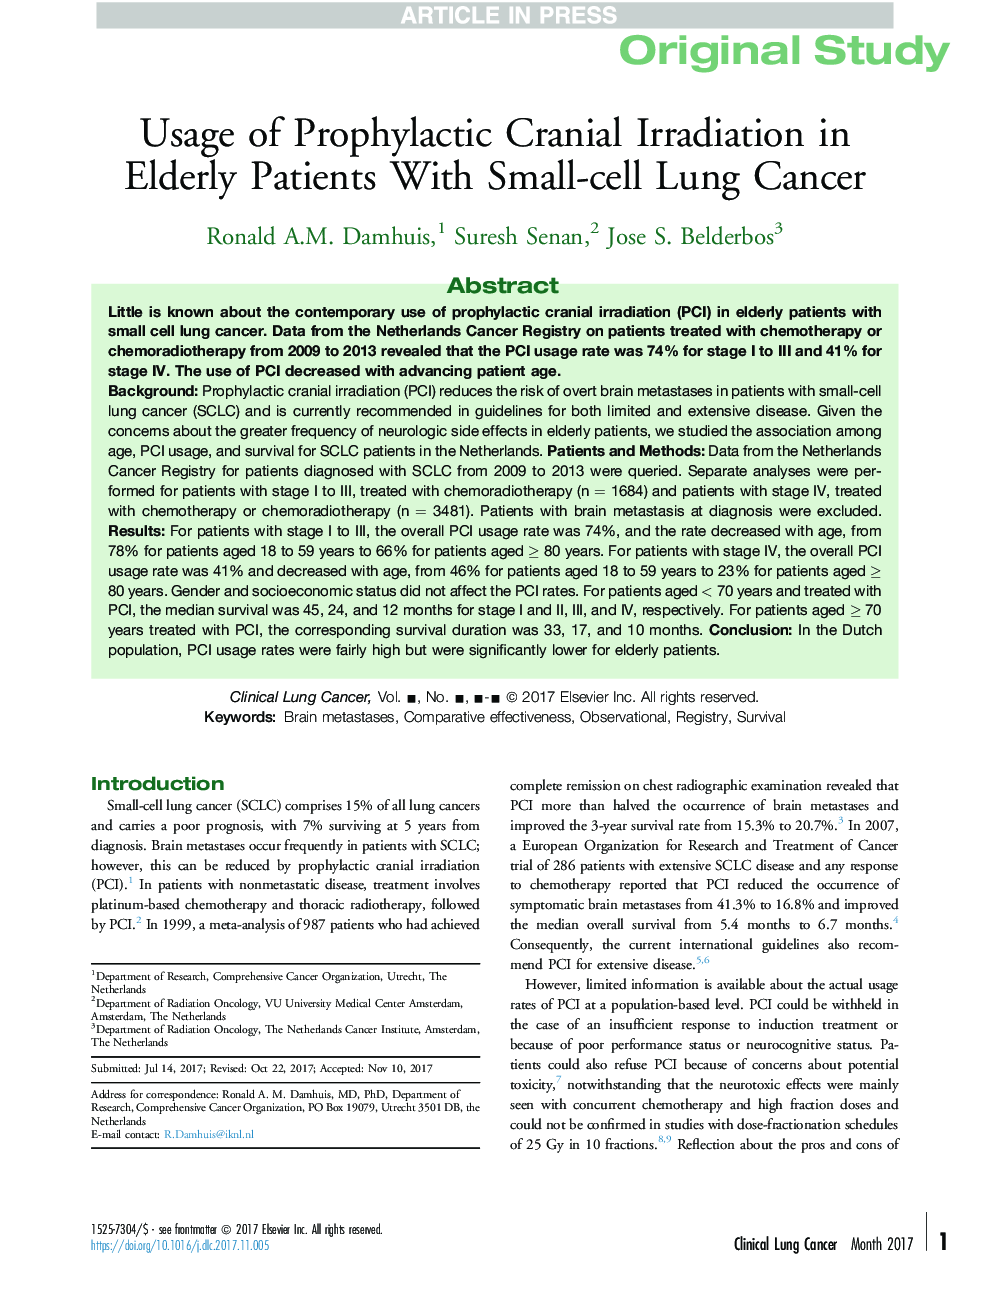 استفاده از اشعه قرنیه پیشگیرانه در بیماران سالمند مبتلا به سرطان ریه های کوچک سلولی 